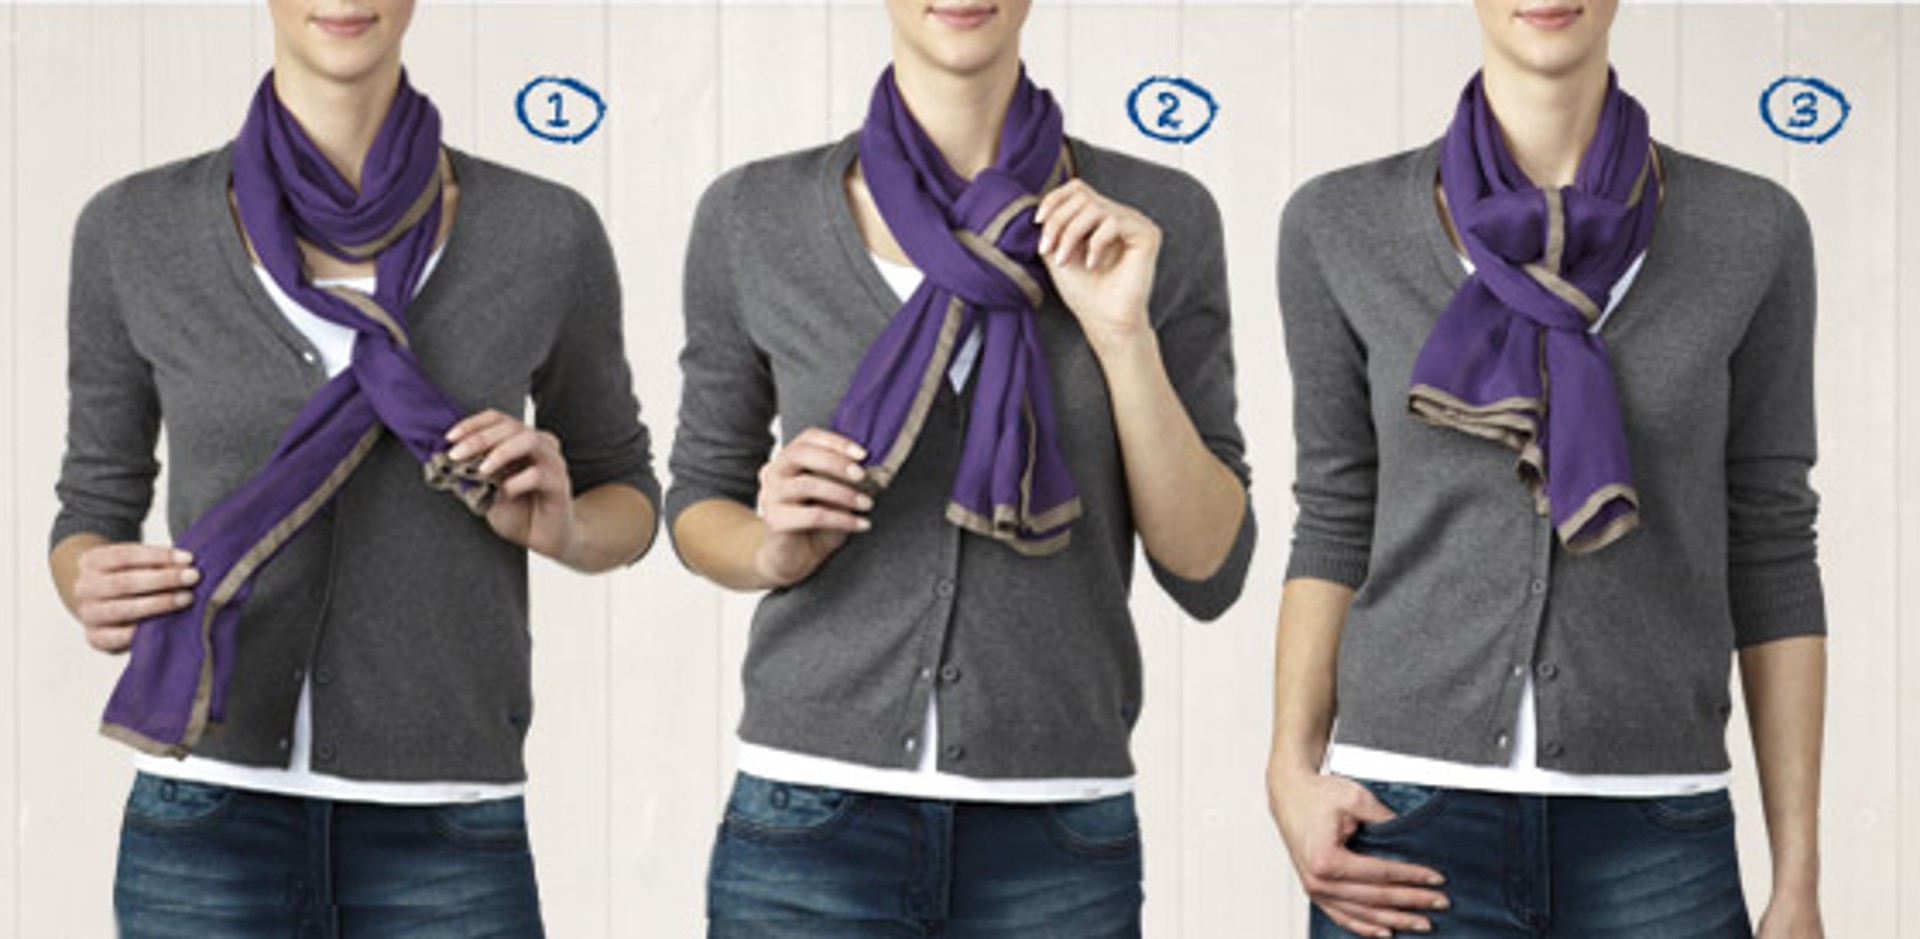 Maak avondeten vacuüm Pessimist Simpele manieren om een sjaal te dragen: 5 eenvoudige looks